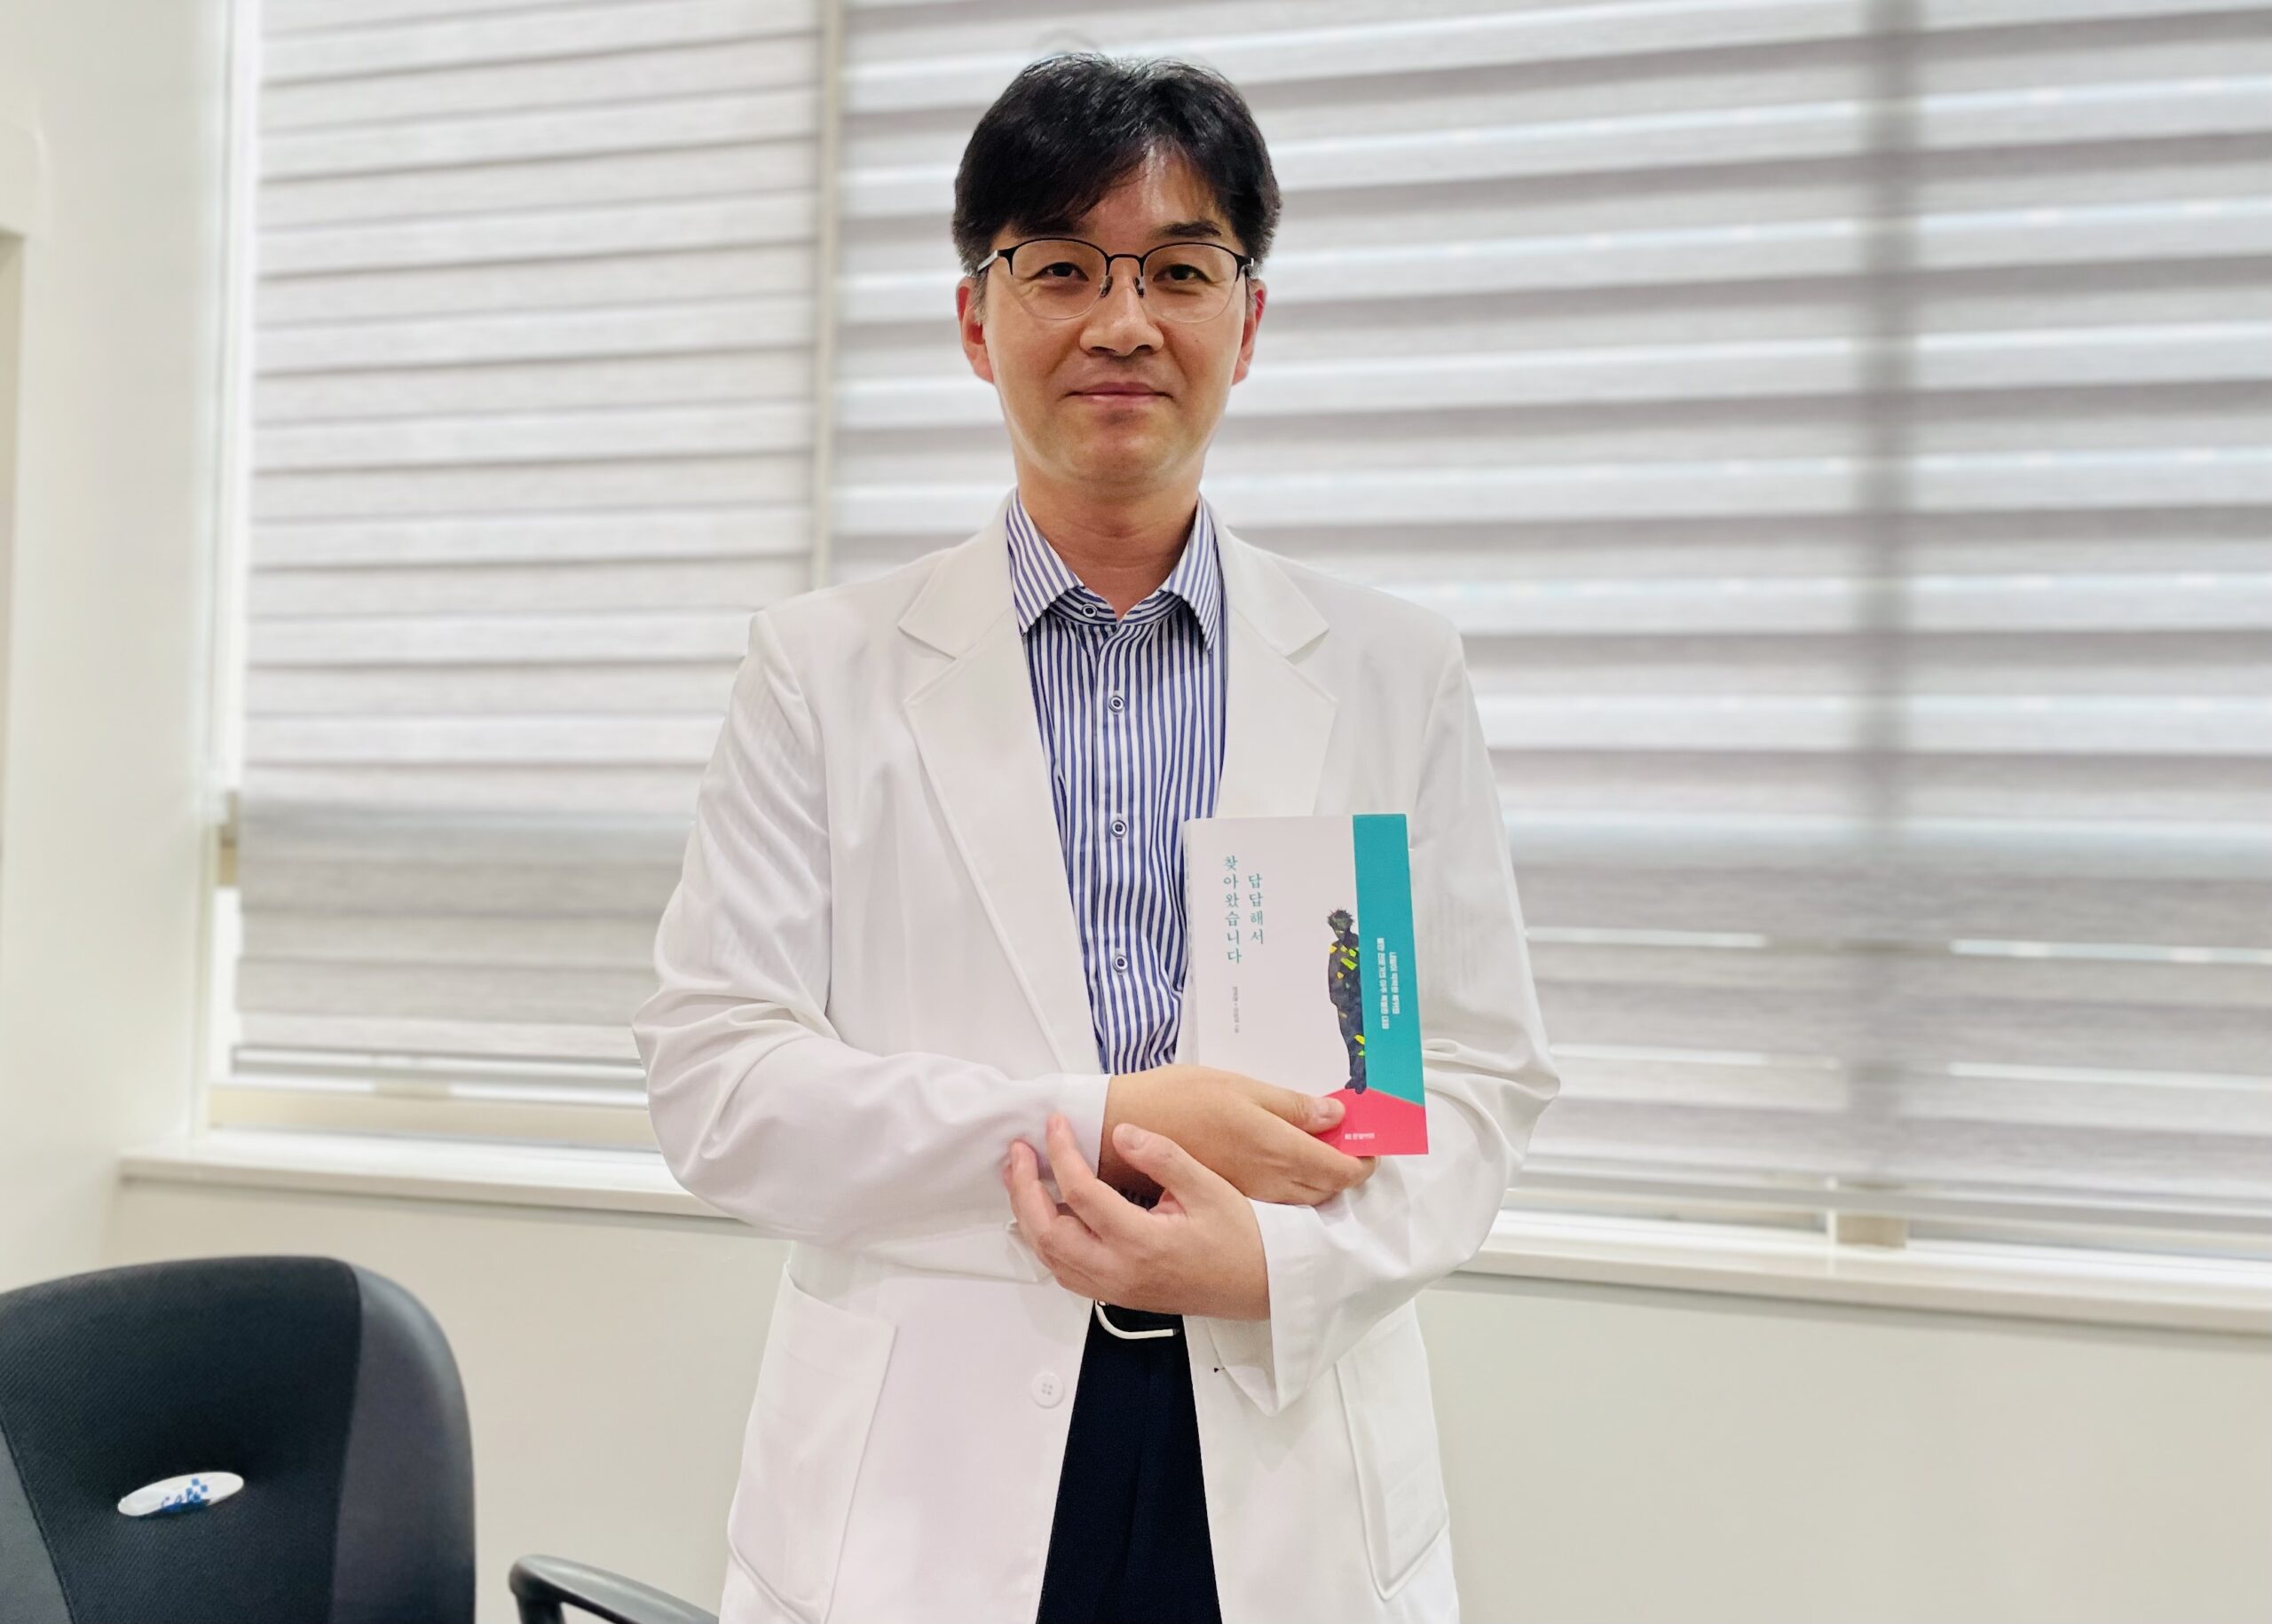 “암환자 마음까지…” 맞춤형 관리 앱 선보인 팔방미인 의사